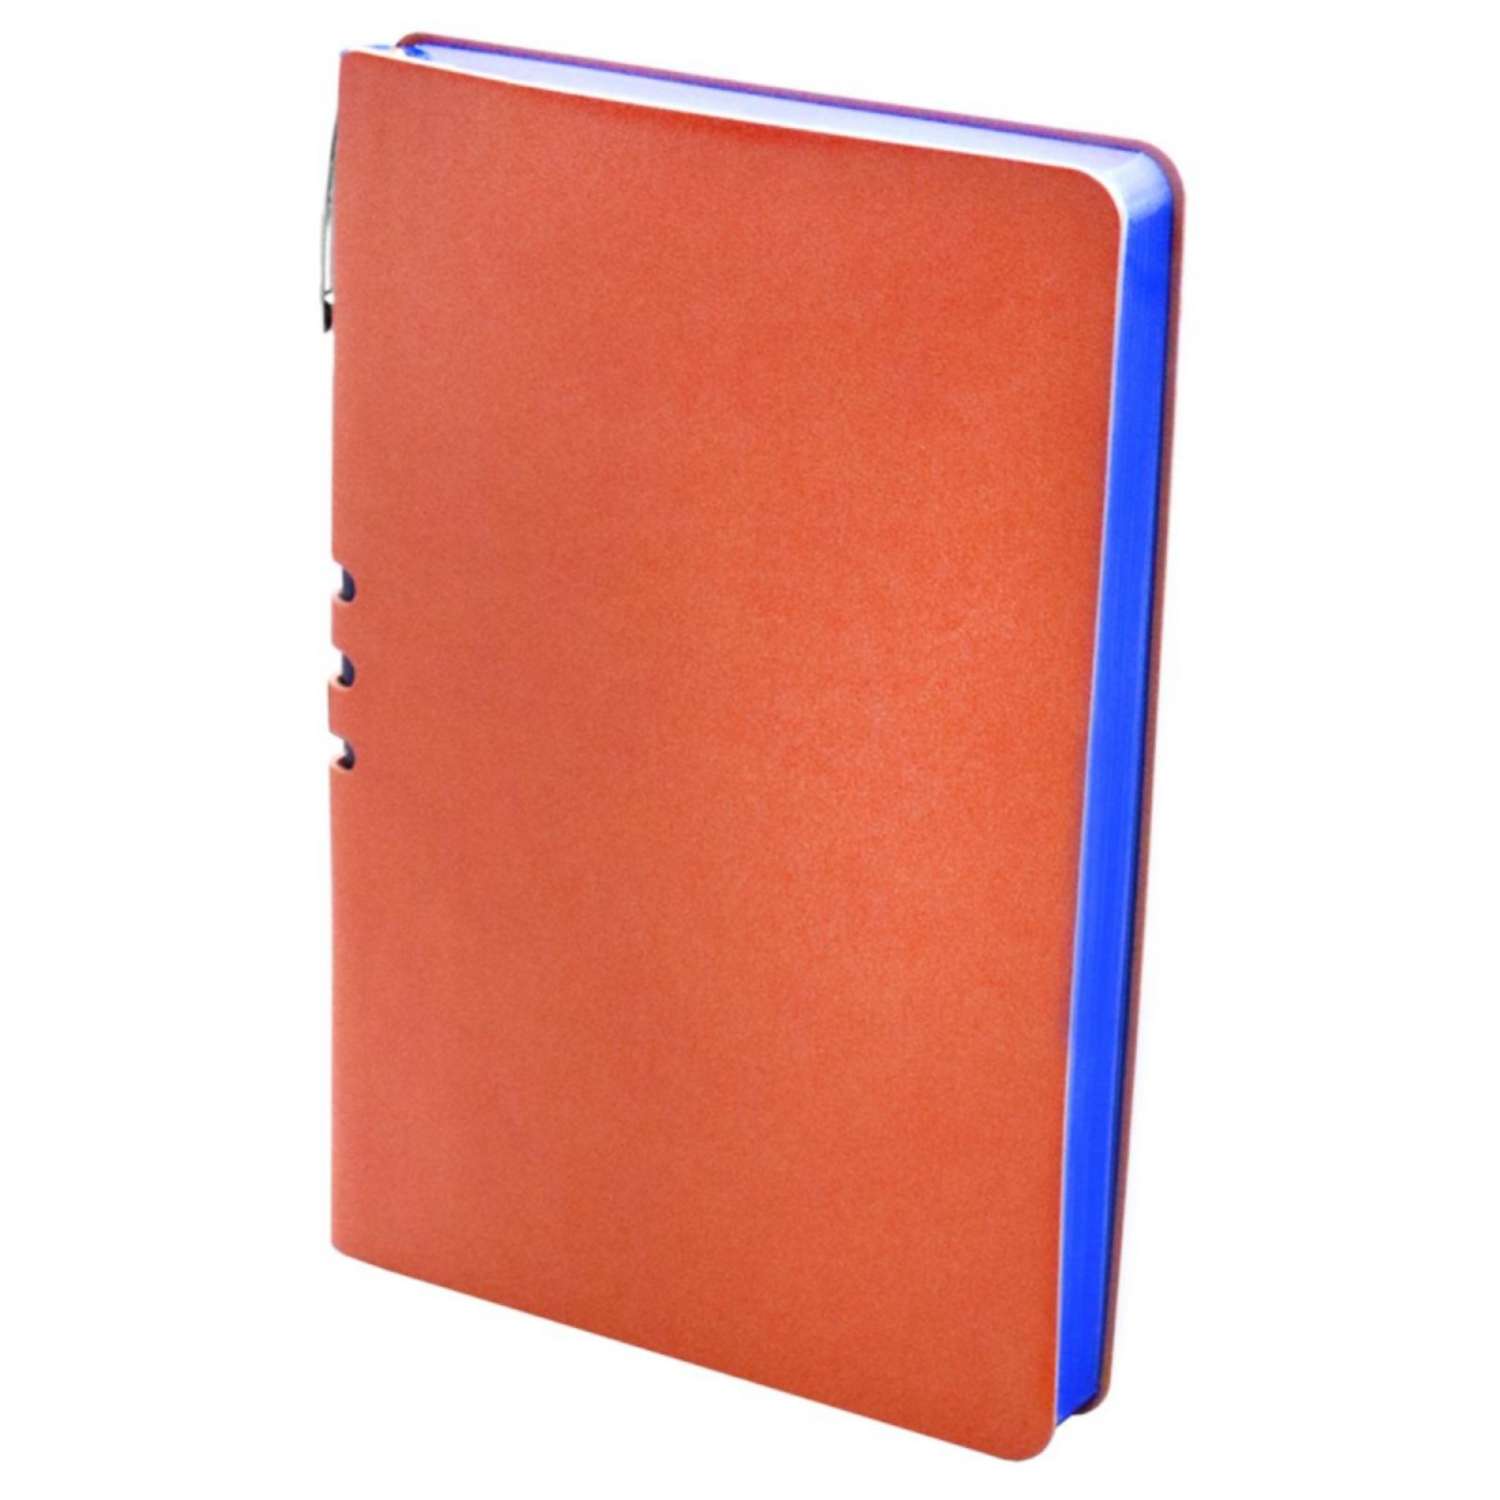 Бизнес-тетрадь Attache Light Book А5 112 листов линия цветной срез кожзаменитель оранжевый - фото 3